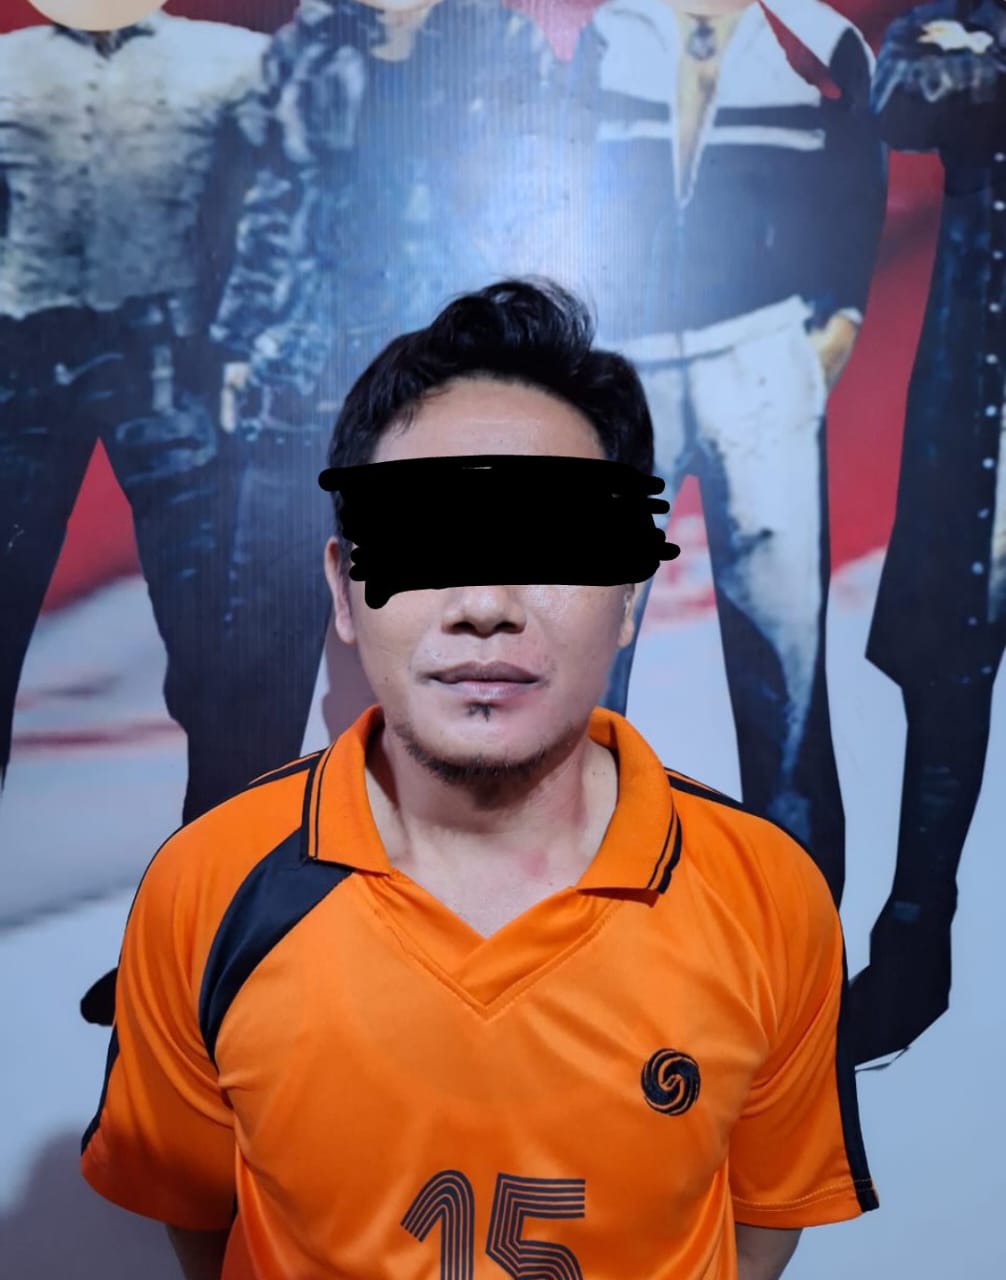 Seorang Ayah di Bengkulu Tega Perkosa Anak Kandung Berulang-ulang Selama 3 Tahun 